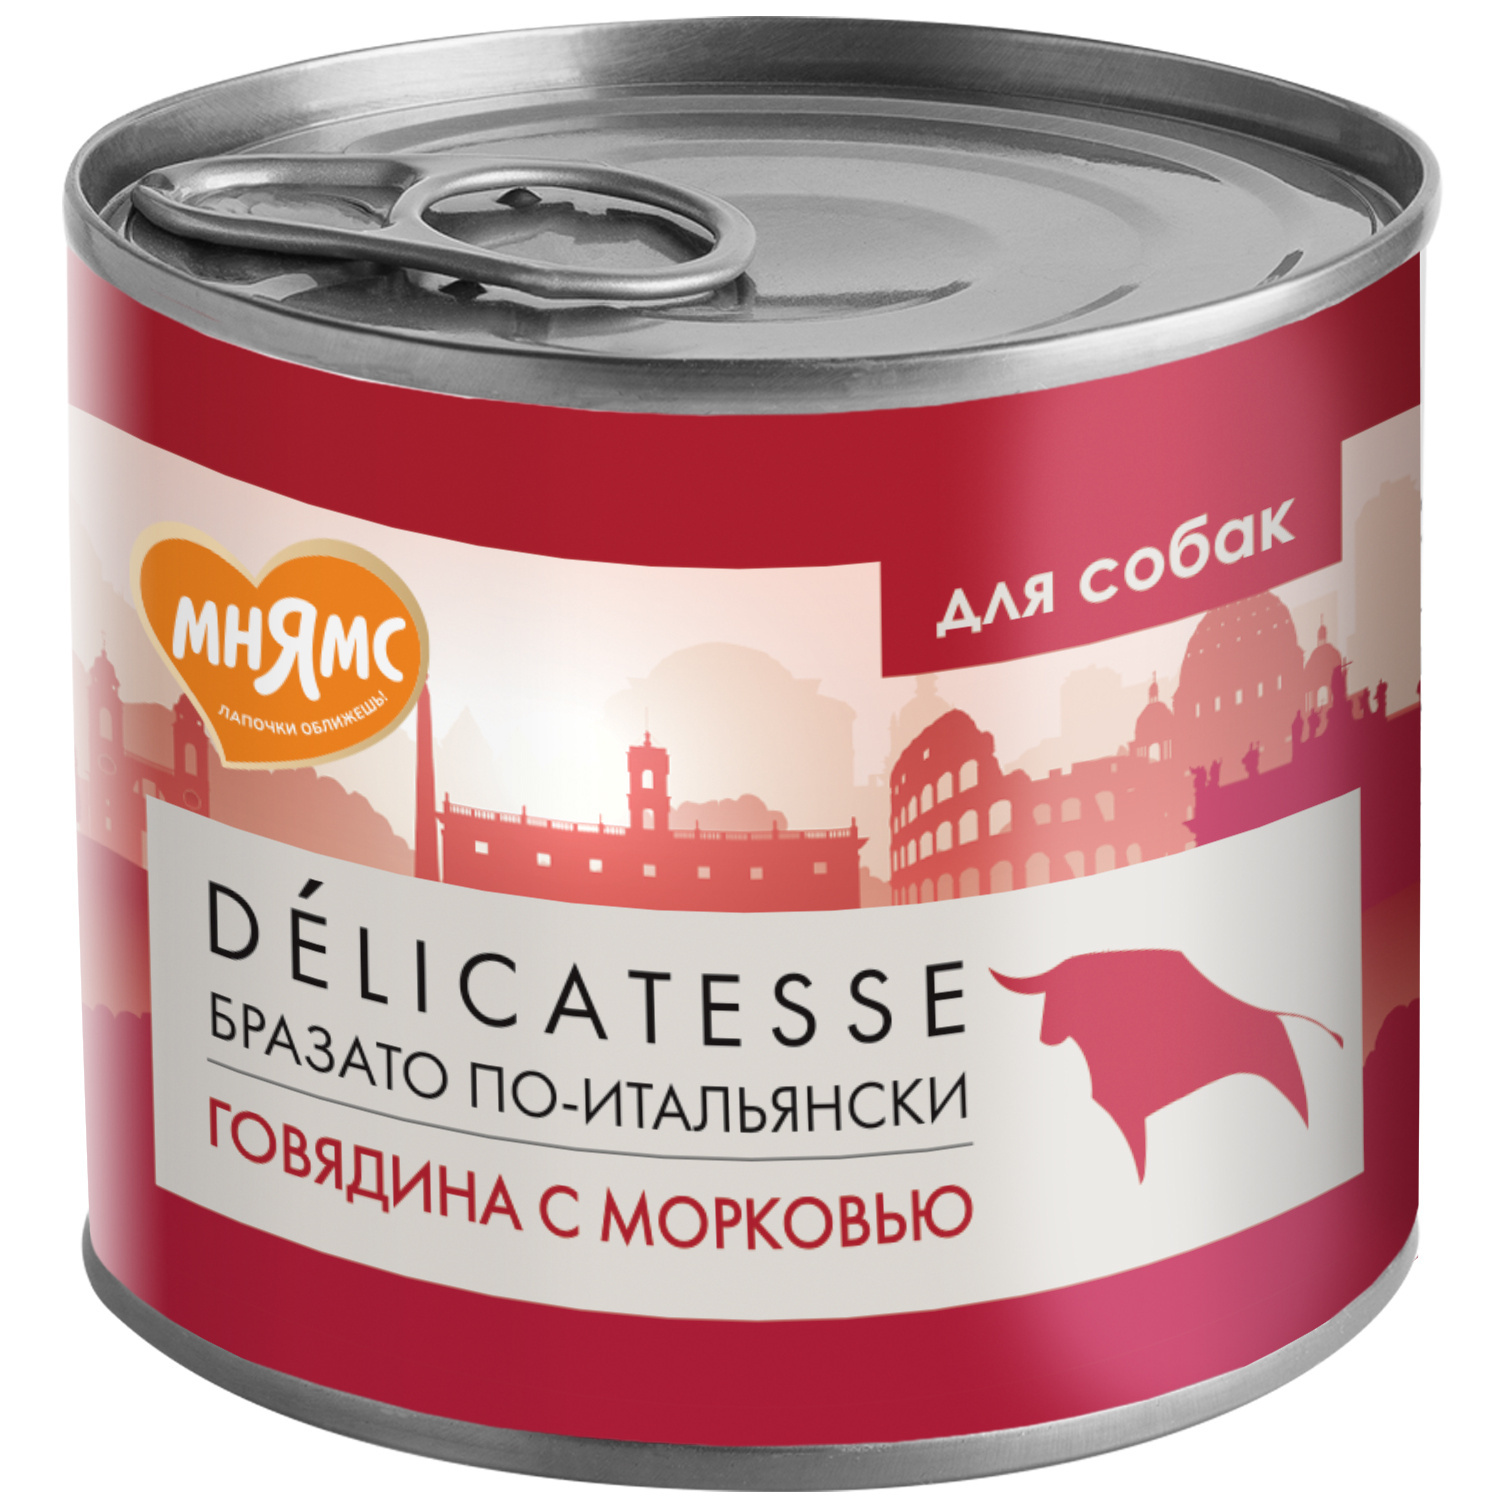 Мнямс Мнямс консервы Бразато по-итальянски для собак всех пород из говядины с морковью (200 г) мнямс мнямс консервы мусака по ираклионски для собак всех пород из ягненка с овощами 400 г